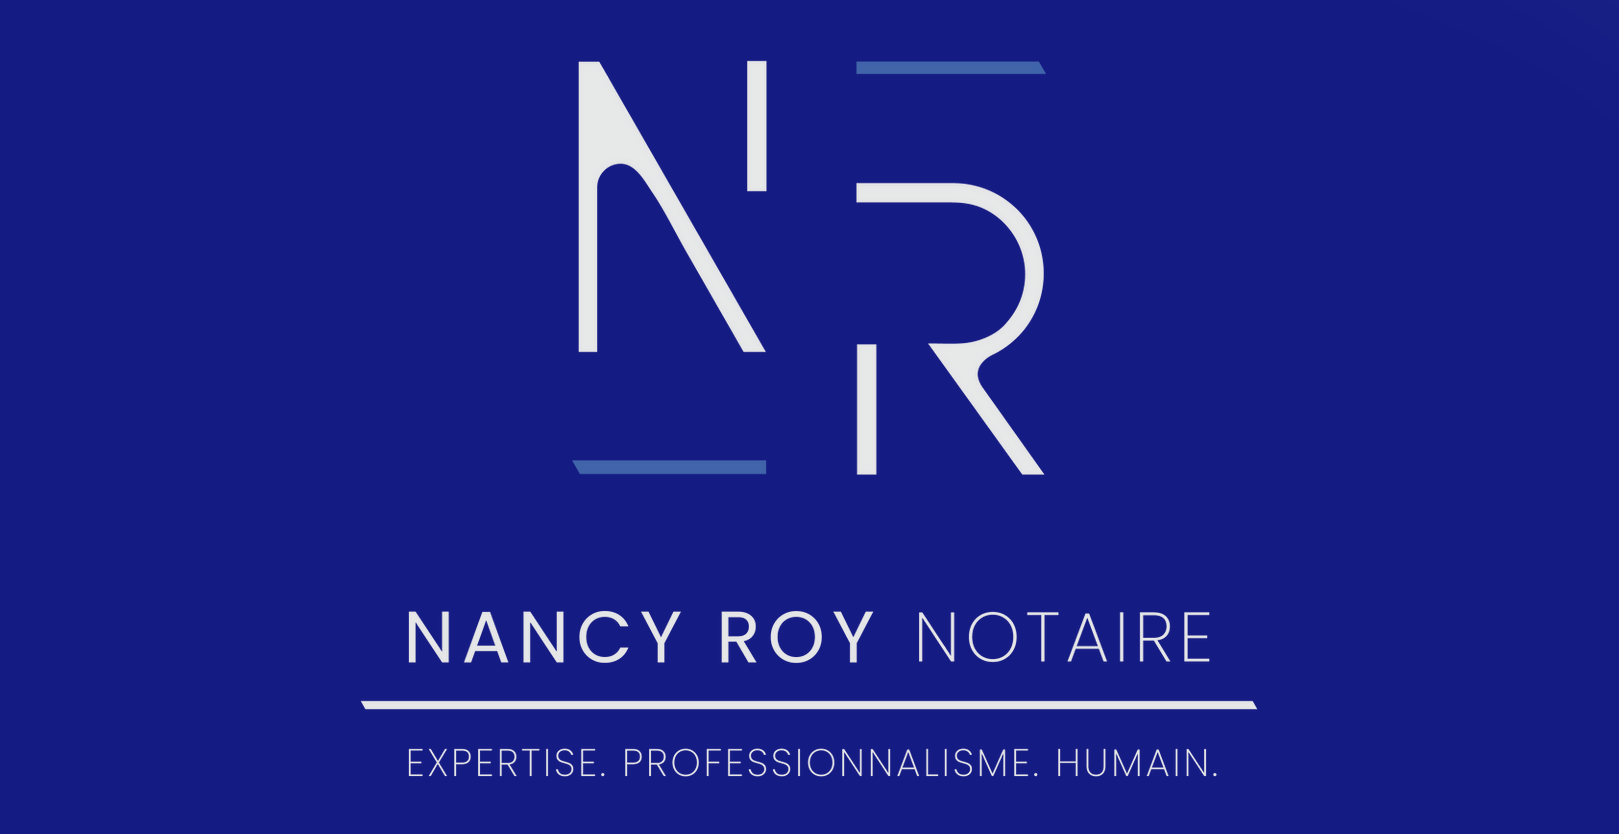 Nancy Roy notaire et conseillère juridique inc.